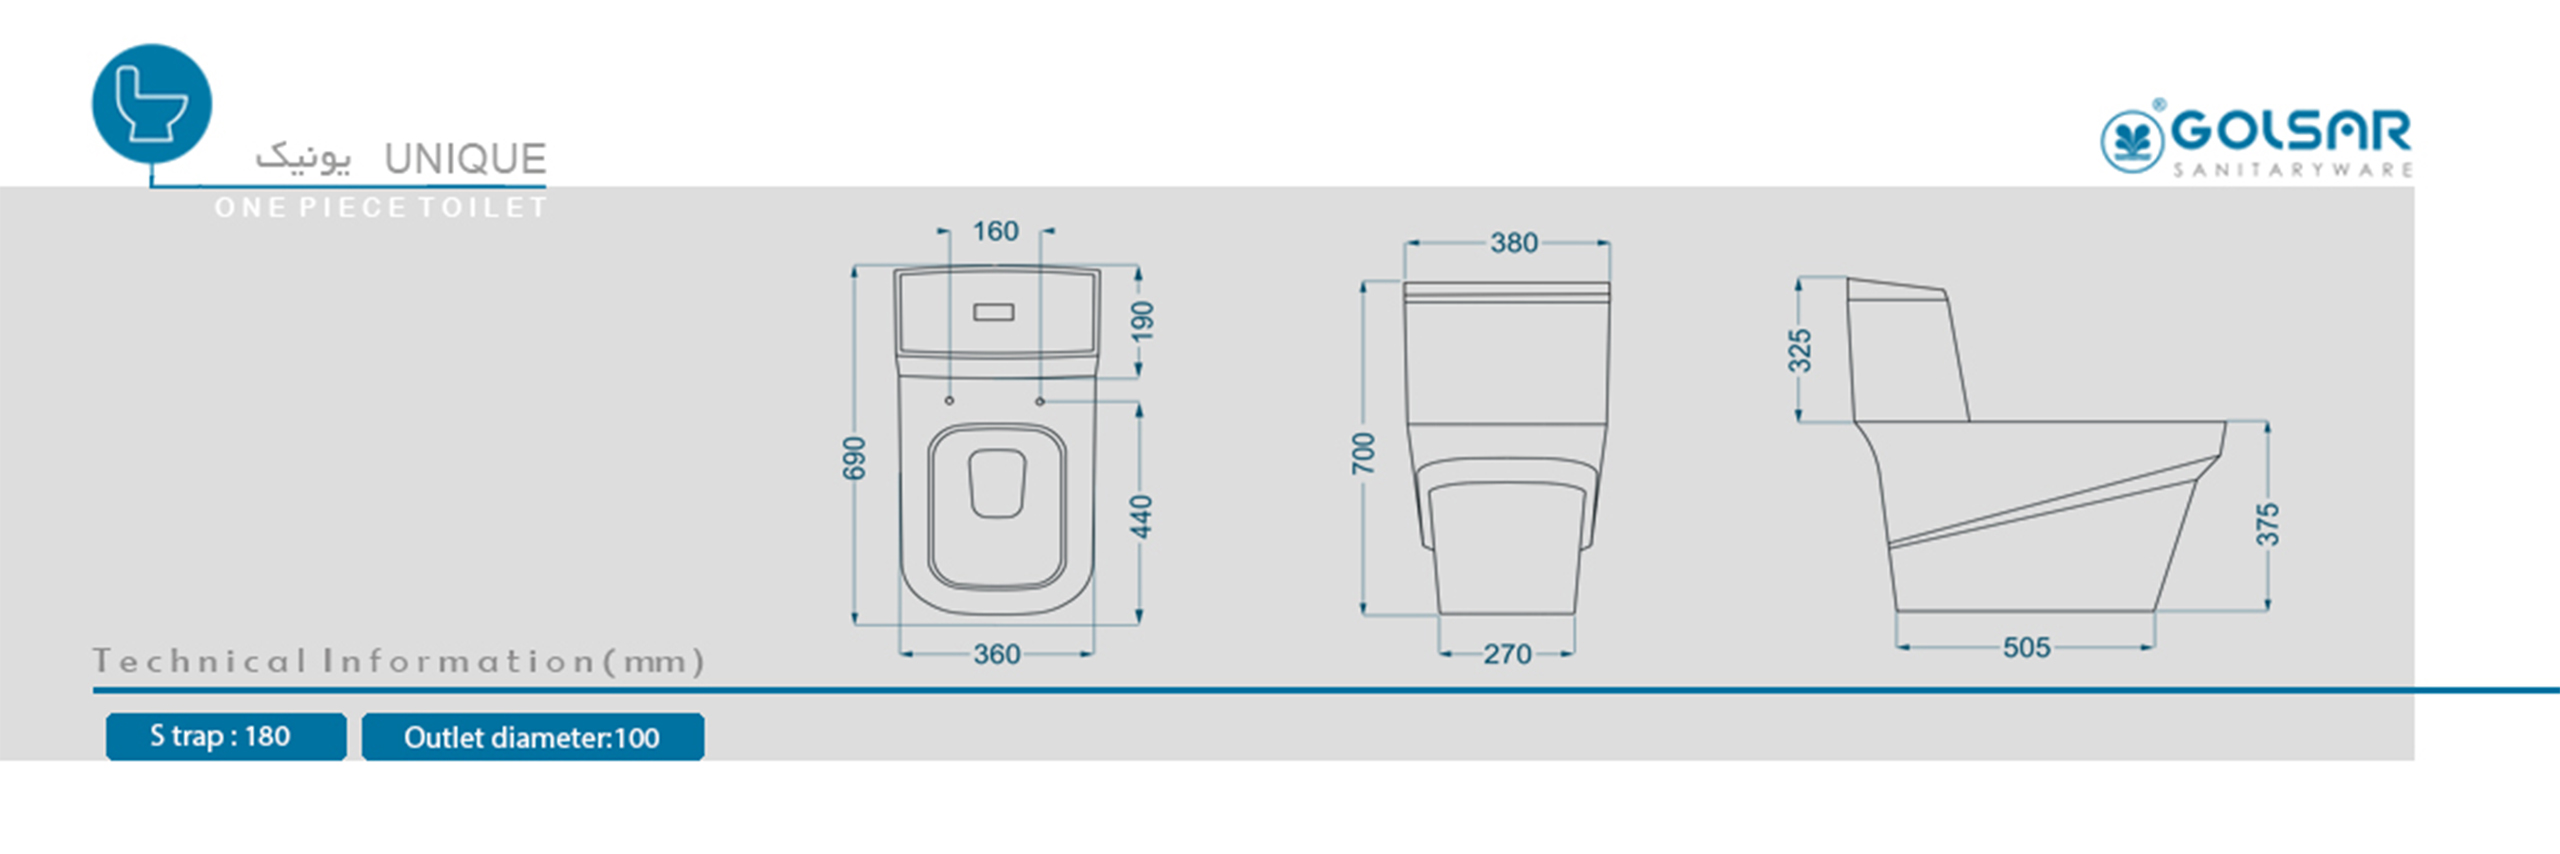 مشخصات توالت فرنگی یونیک گلسار